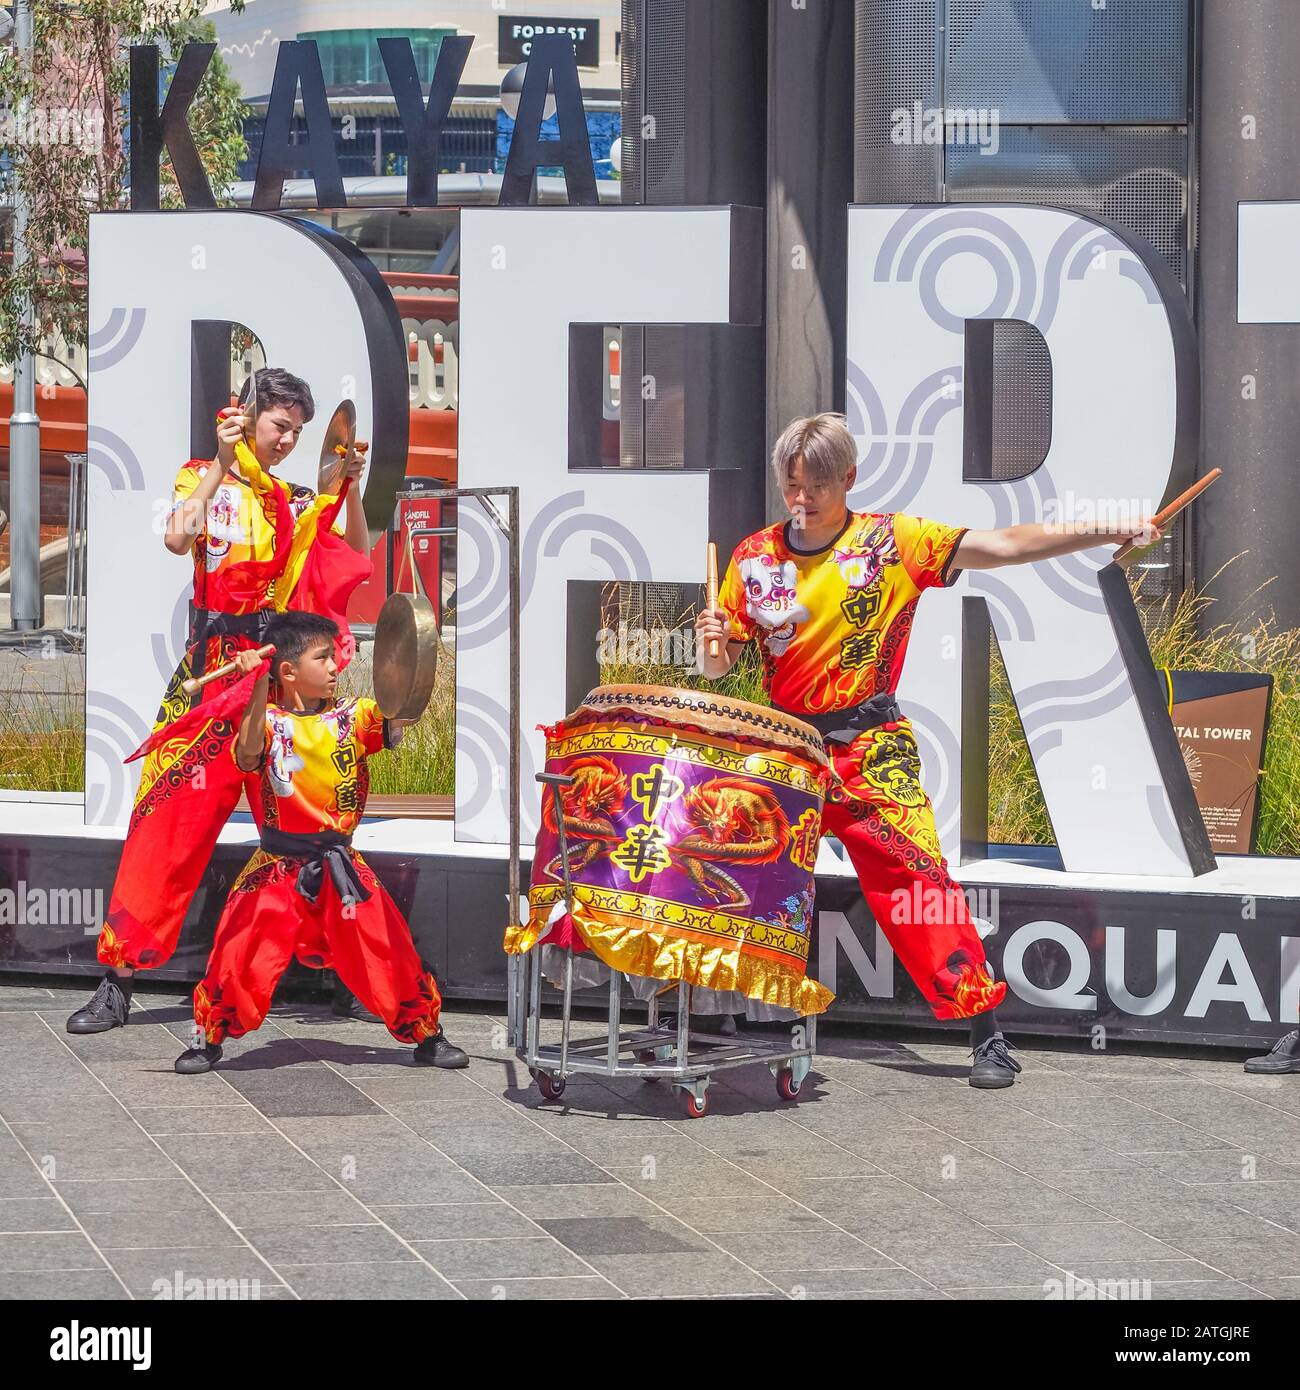 Batteur et jeunes percussionnistes au Perth Chinese New Year Fair 2020 pour célébrer l'année lunaire du rat Banque D'Images